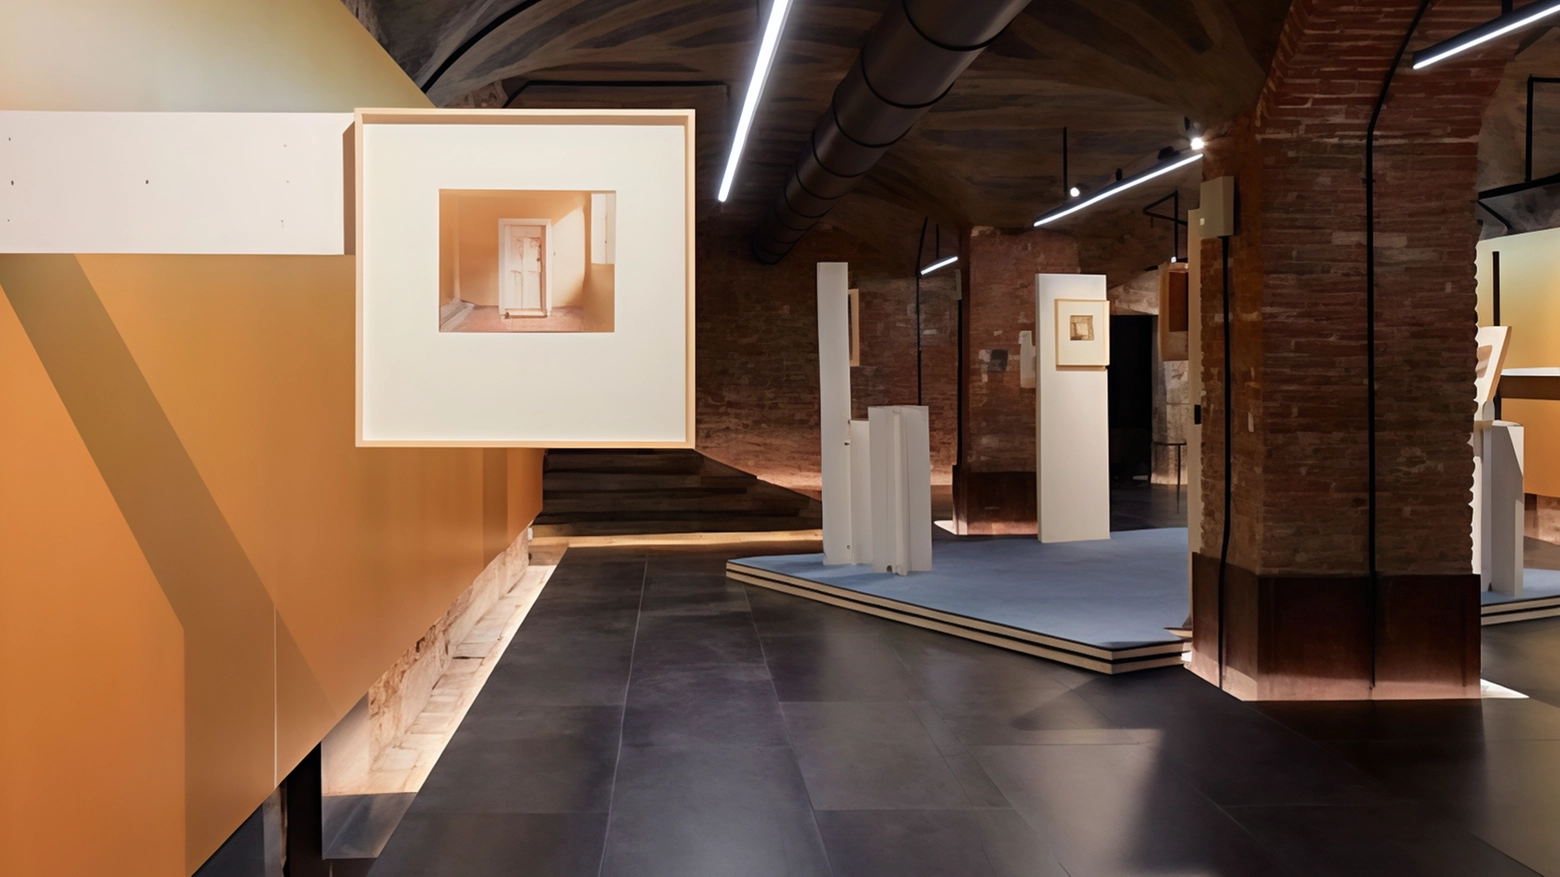 La mostra "Luigi Ghirri. Atelier Morandi" a Palazzo Bentivoglio presenta le fotografie inedite del grande fotografo, offrendo un viaggio emotivo nello studio di Giorgio Morandi. Un'installazione ecologica e suggestiva che celebra entrambi gli artisti.